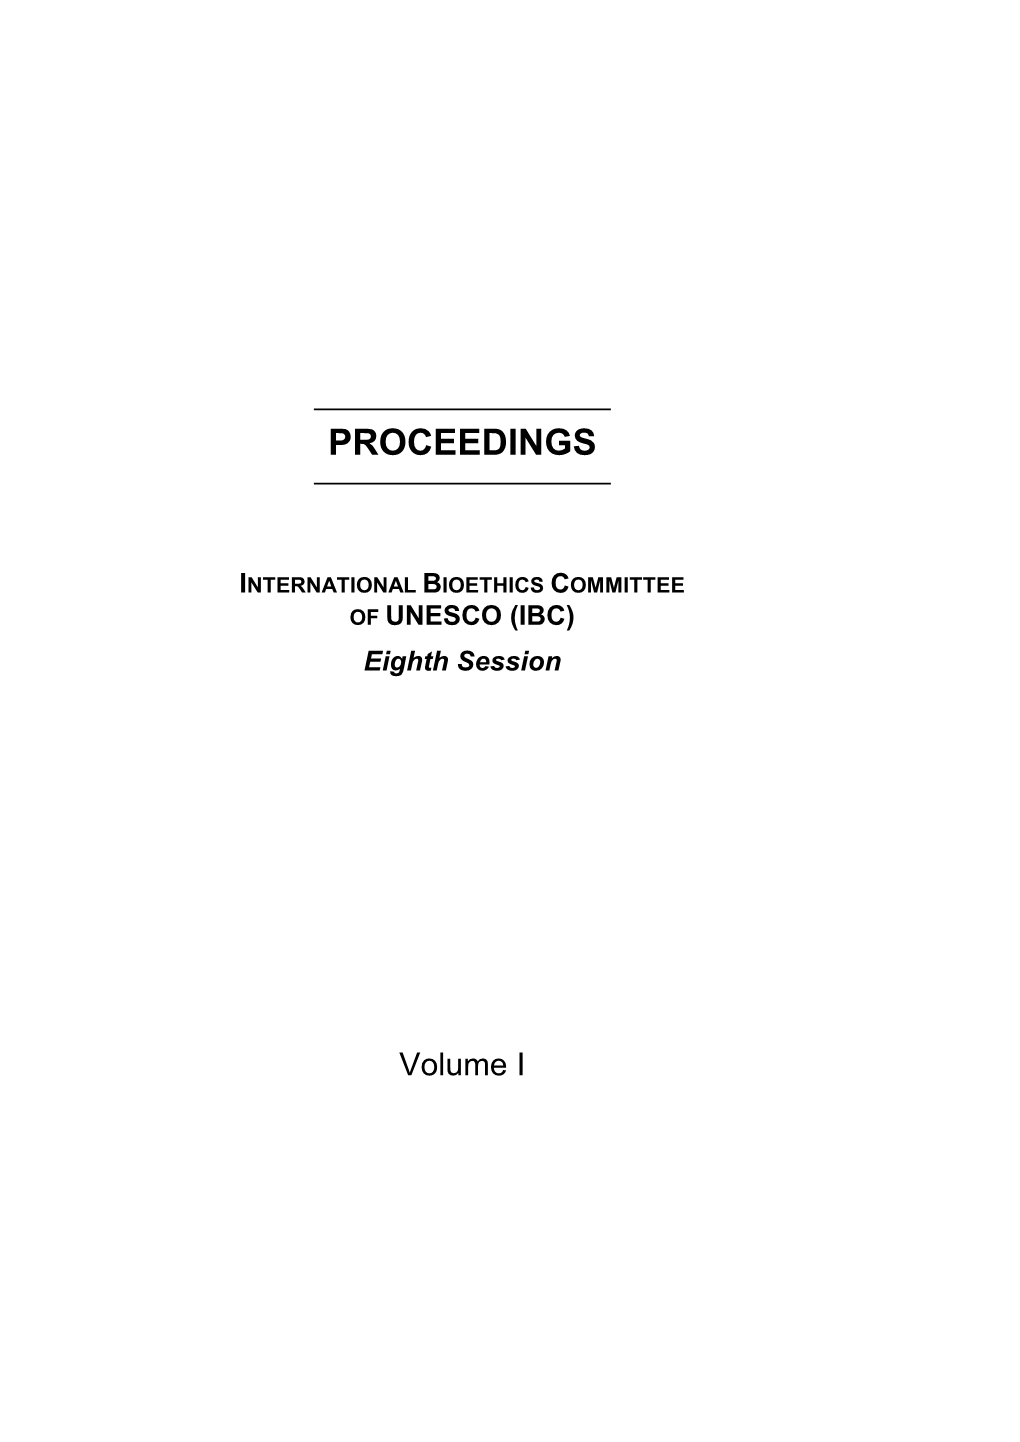 International Bioethics Committee; 8Th; Proceedings; 2001